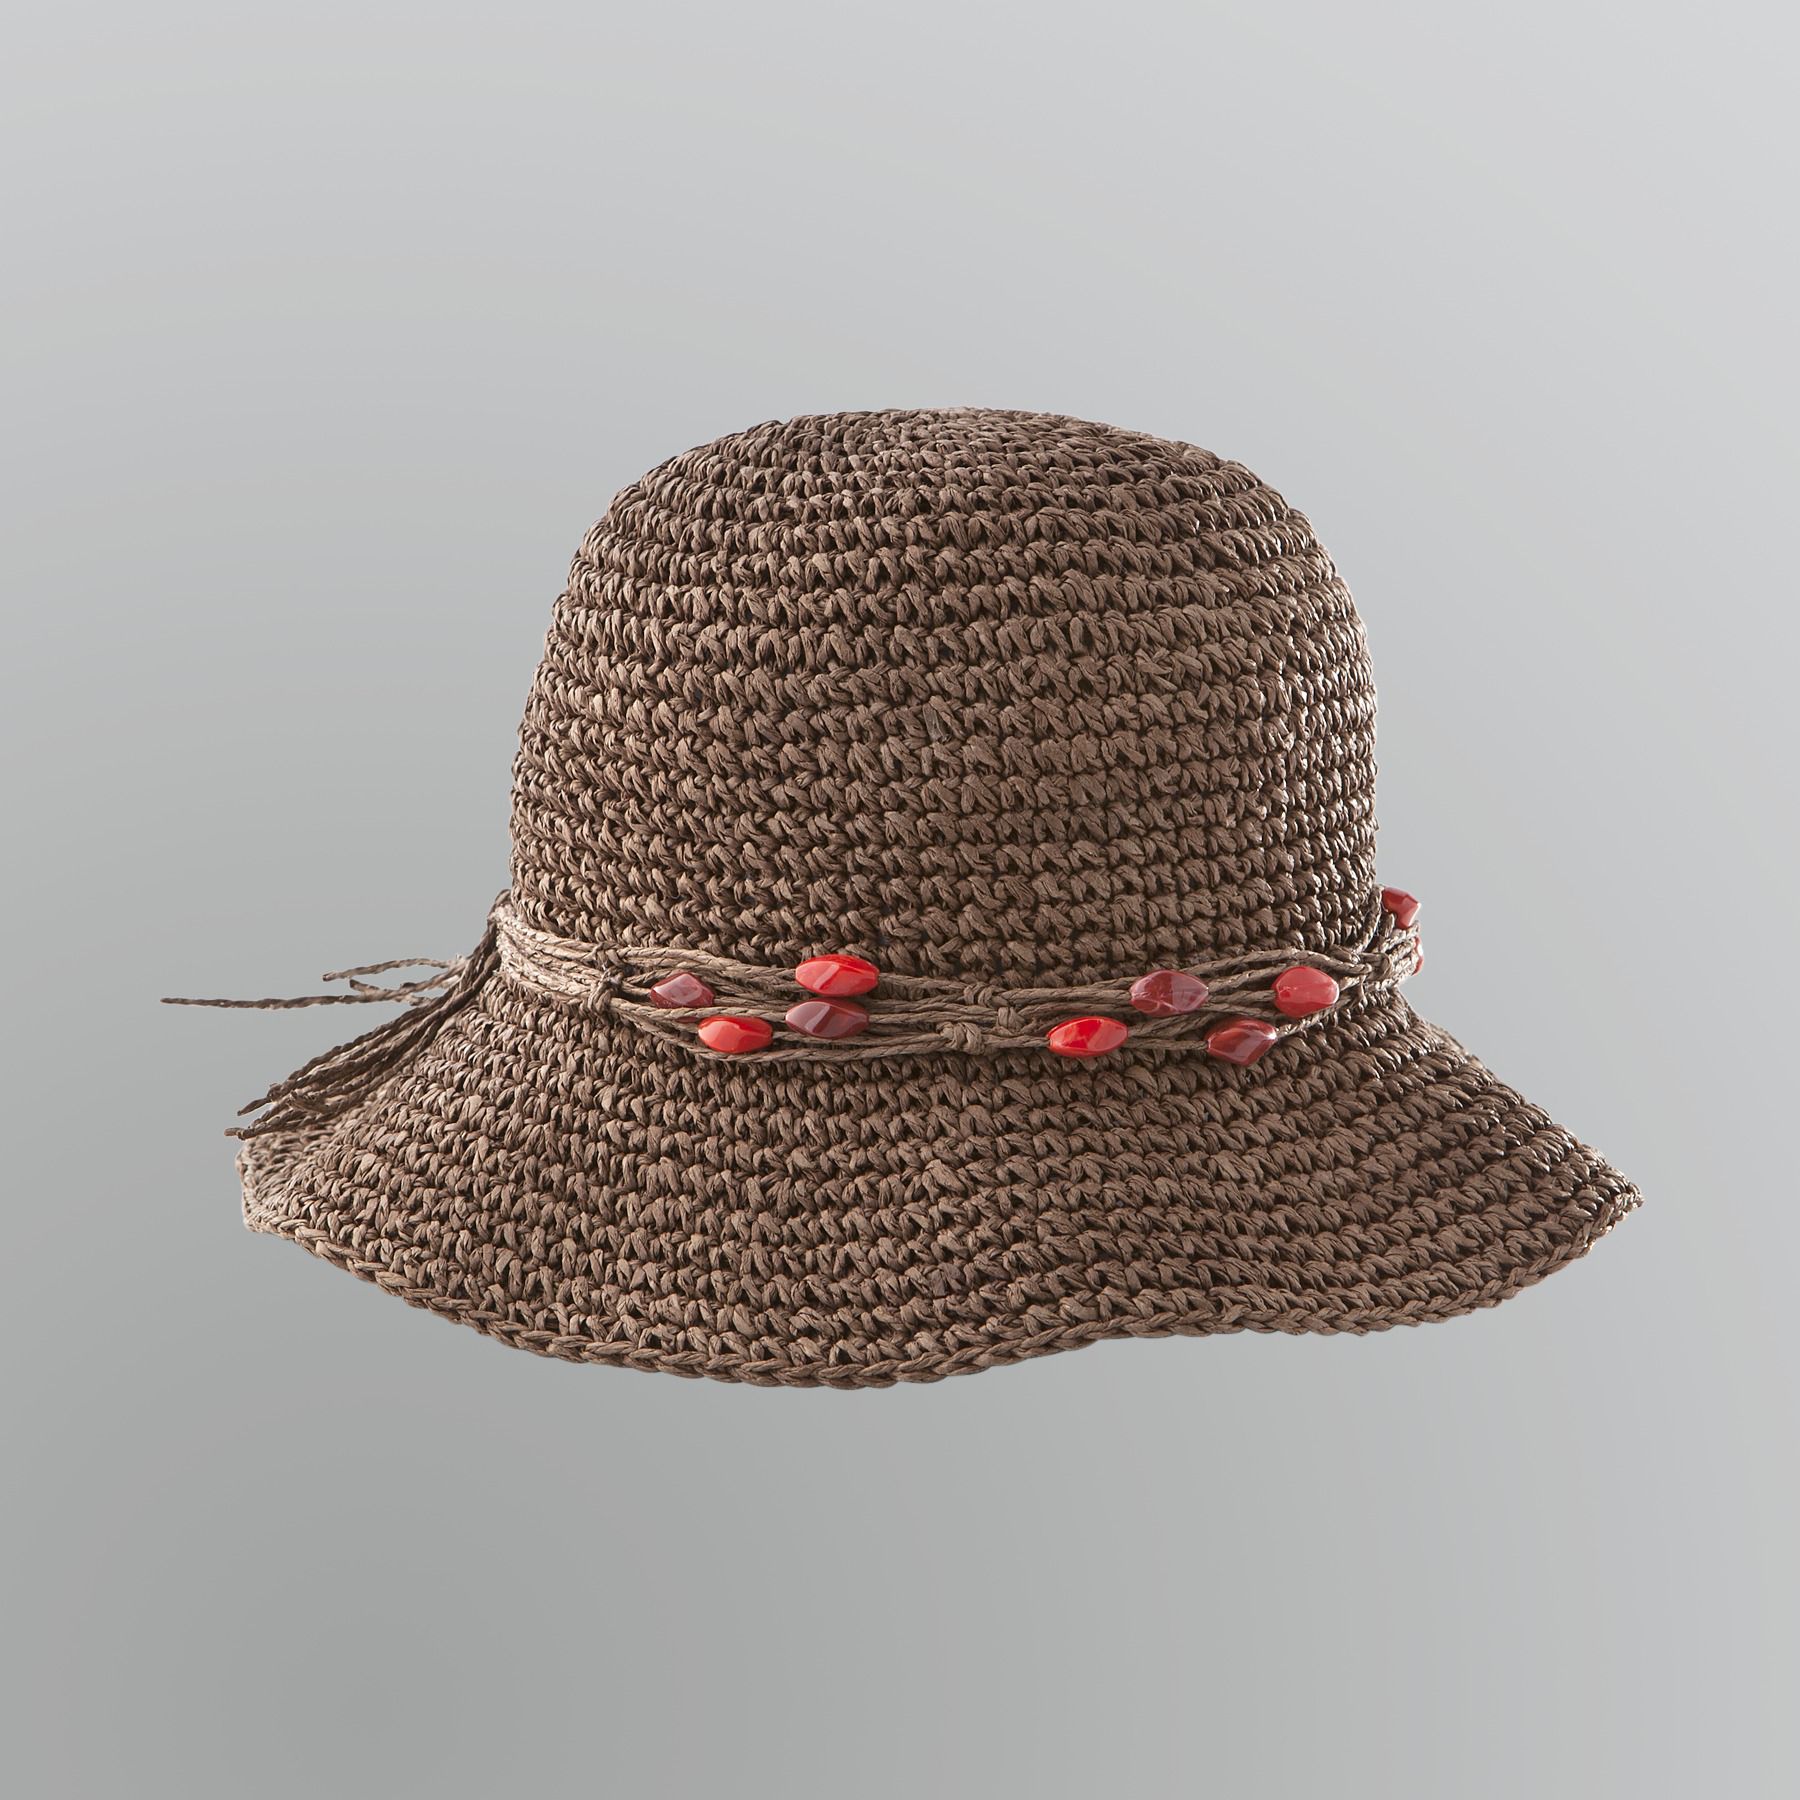 Jaclyn Smith Women's Crocheted Cloche Hat